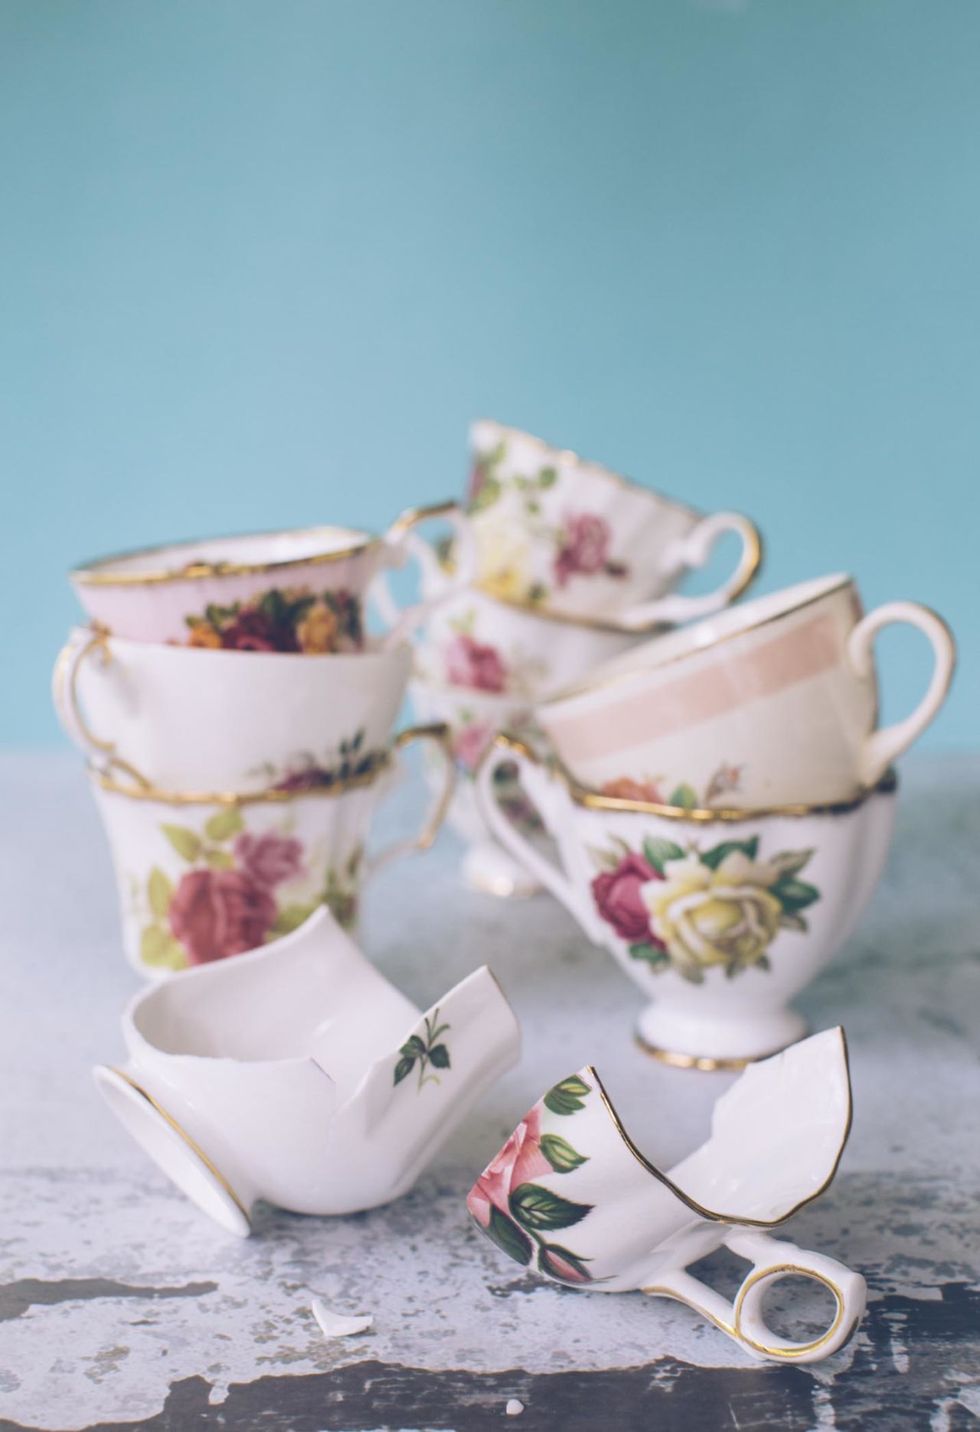 Teacup, Pink, Cup, Tableware, Drinkware, Cup, Serveware, Porcelain, Saucer, Flower, 